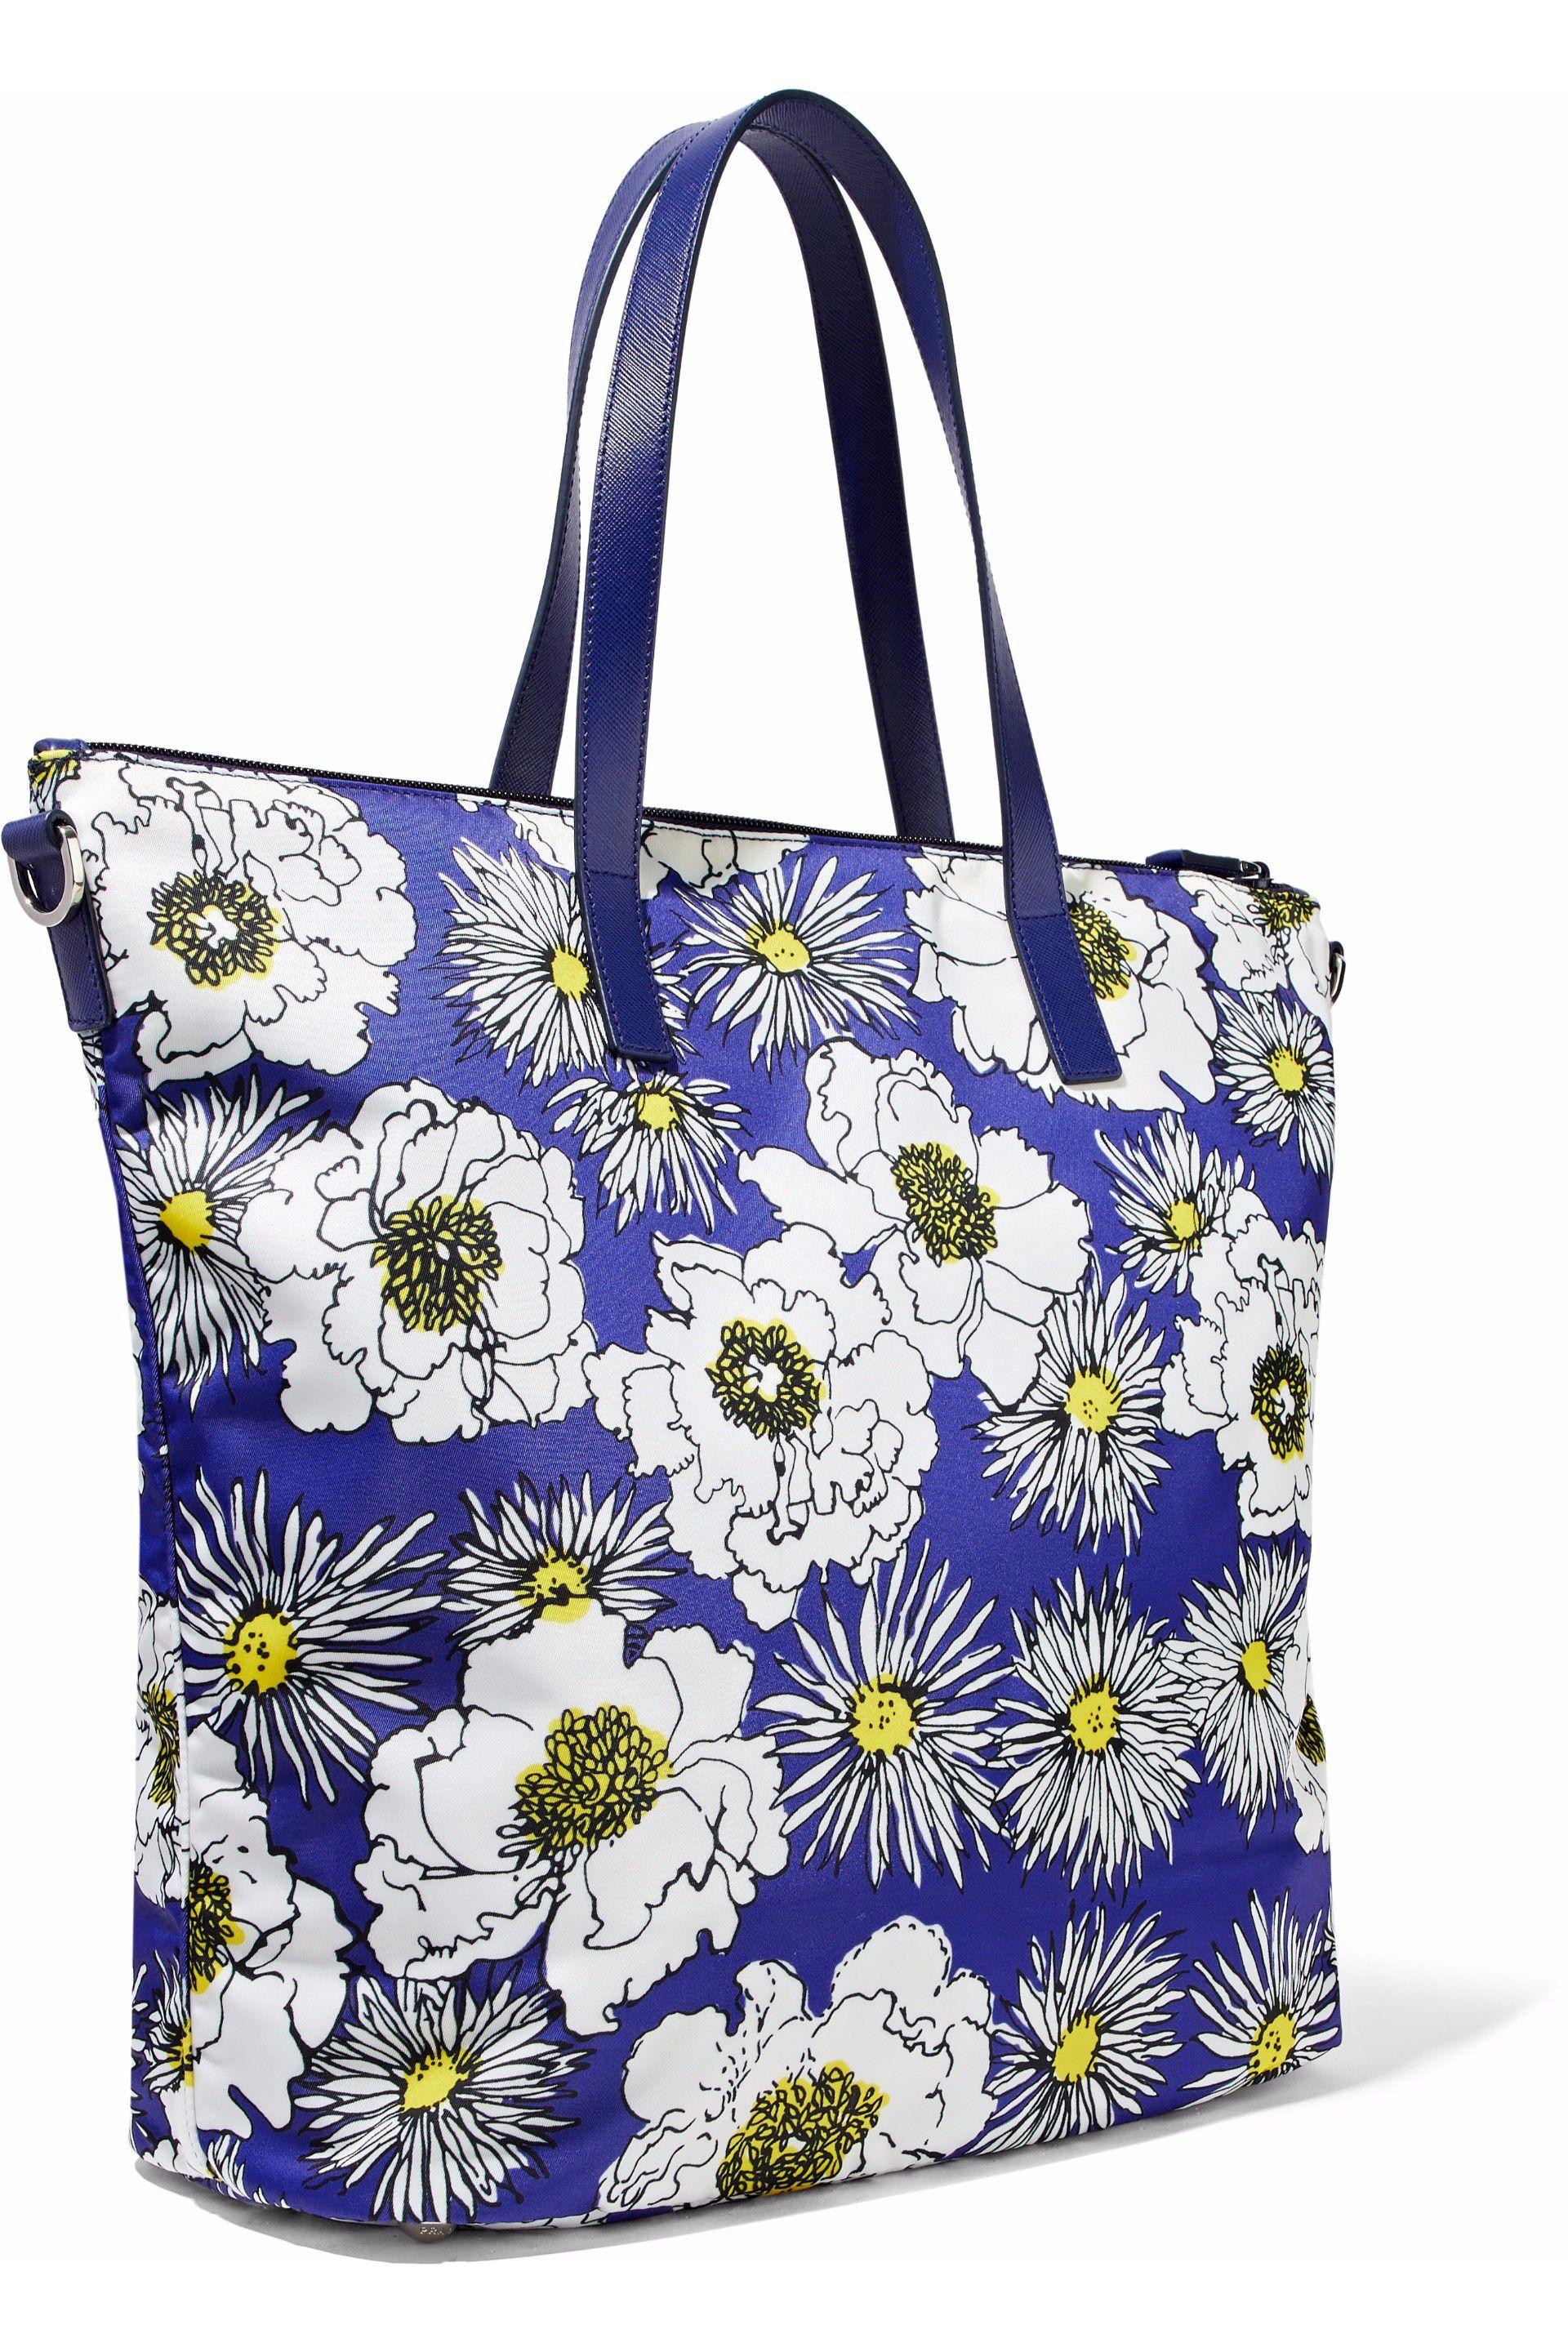 prada floral bag